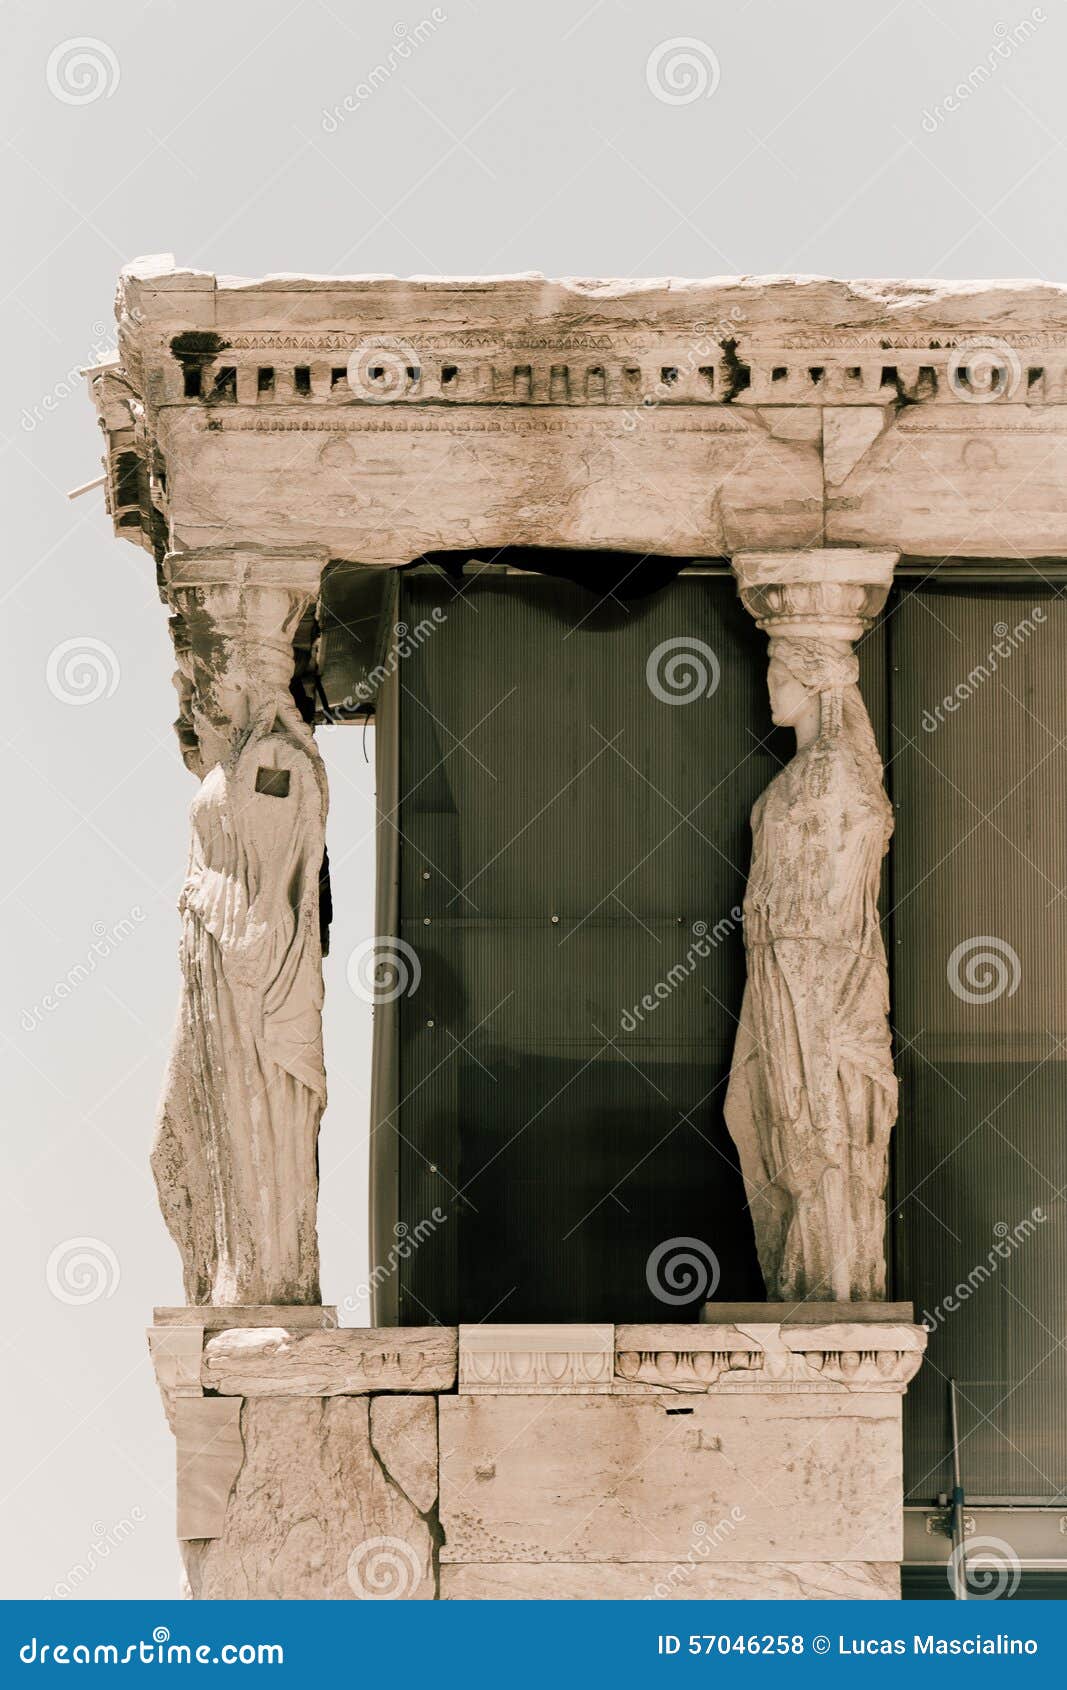 atenas greece acropolis erecteon